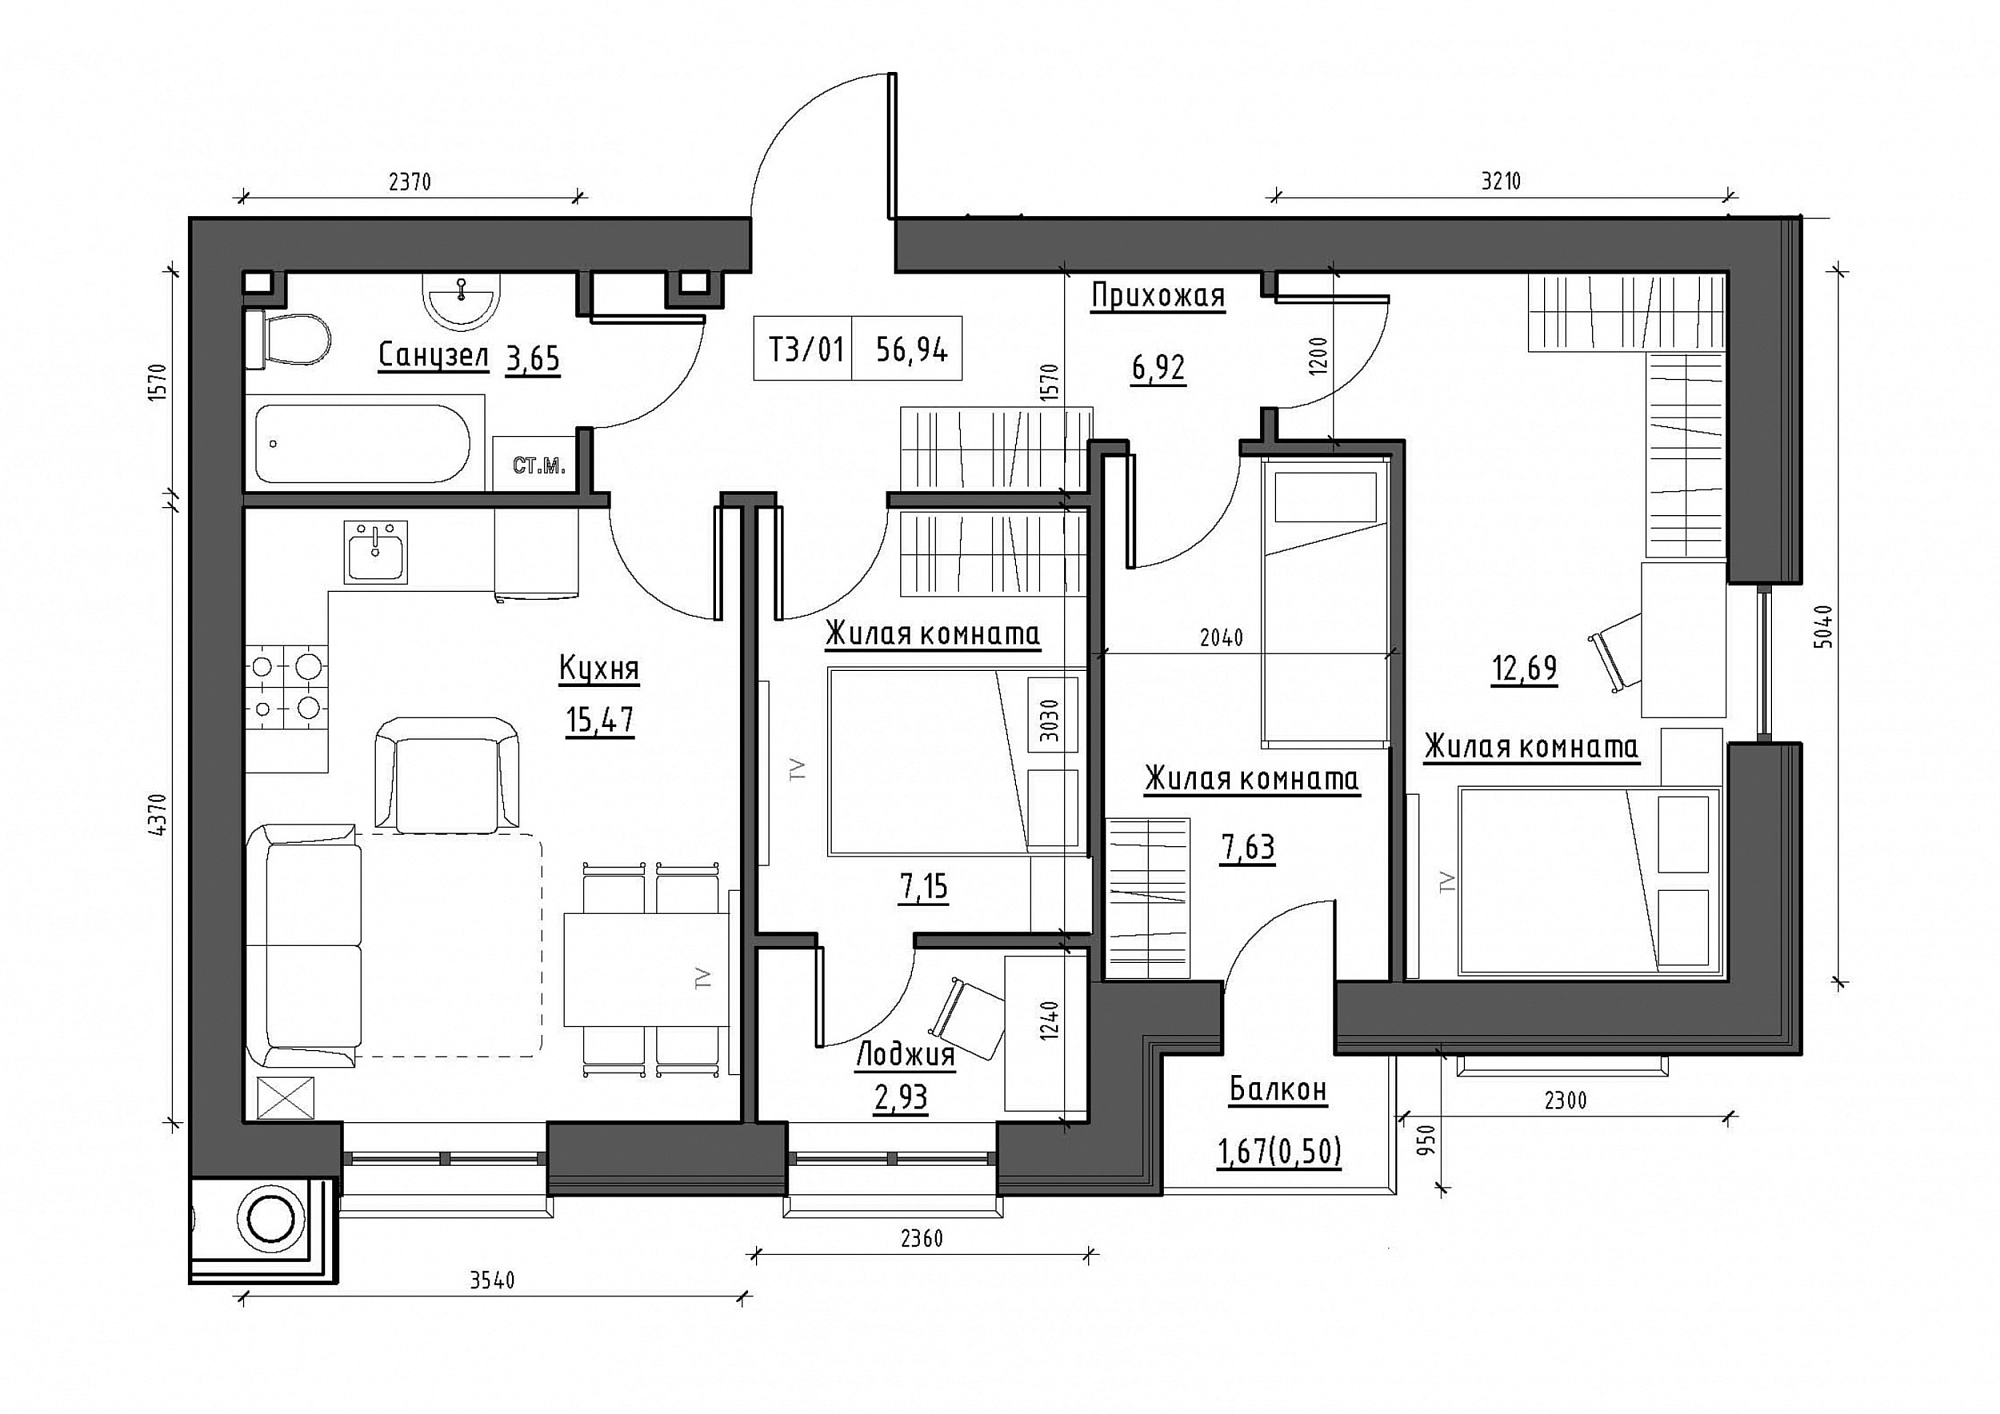 Планування 3-к квартира площею 56.94м2, KS-011-02/0008.